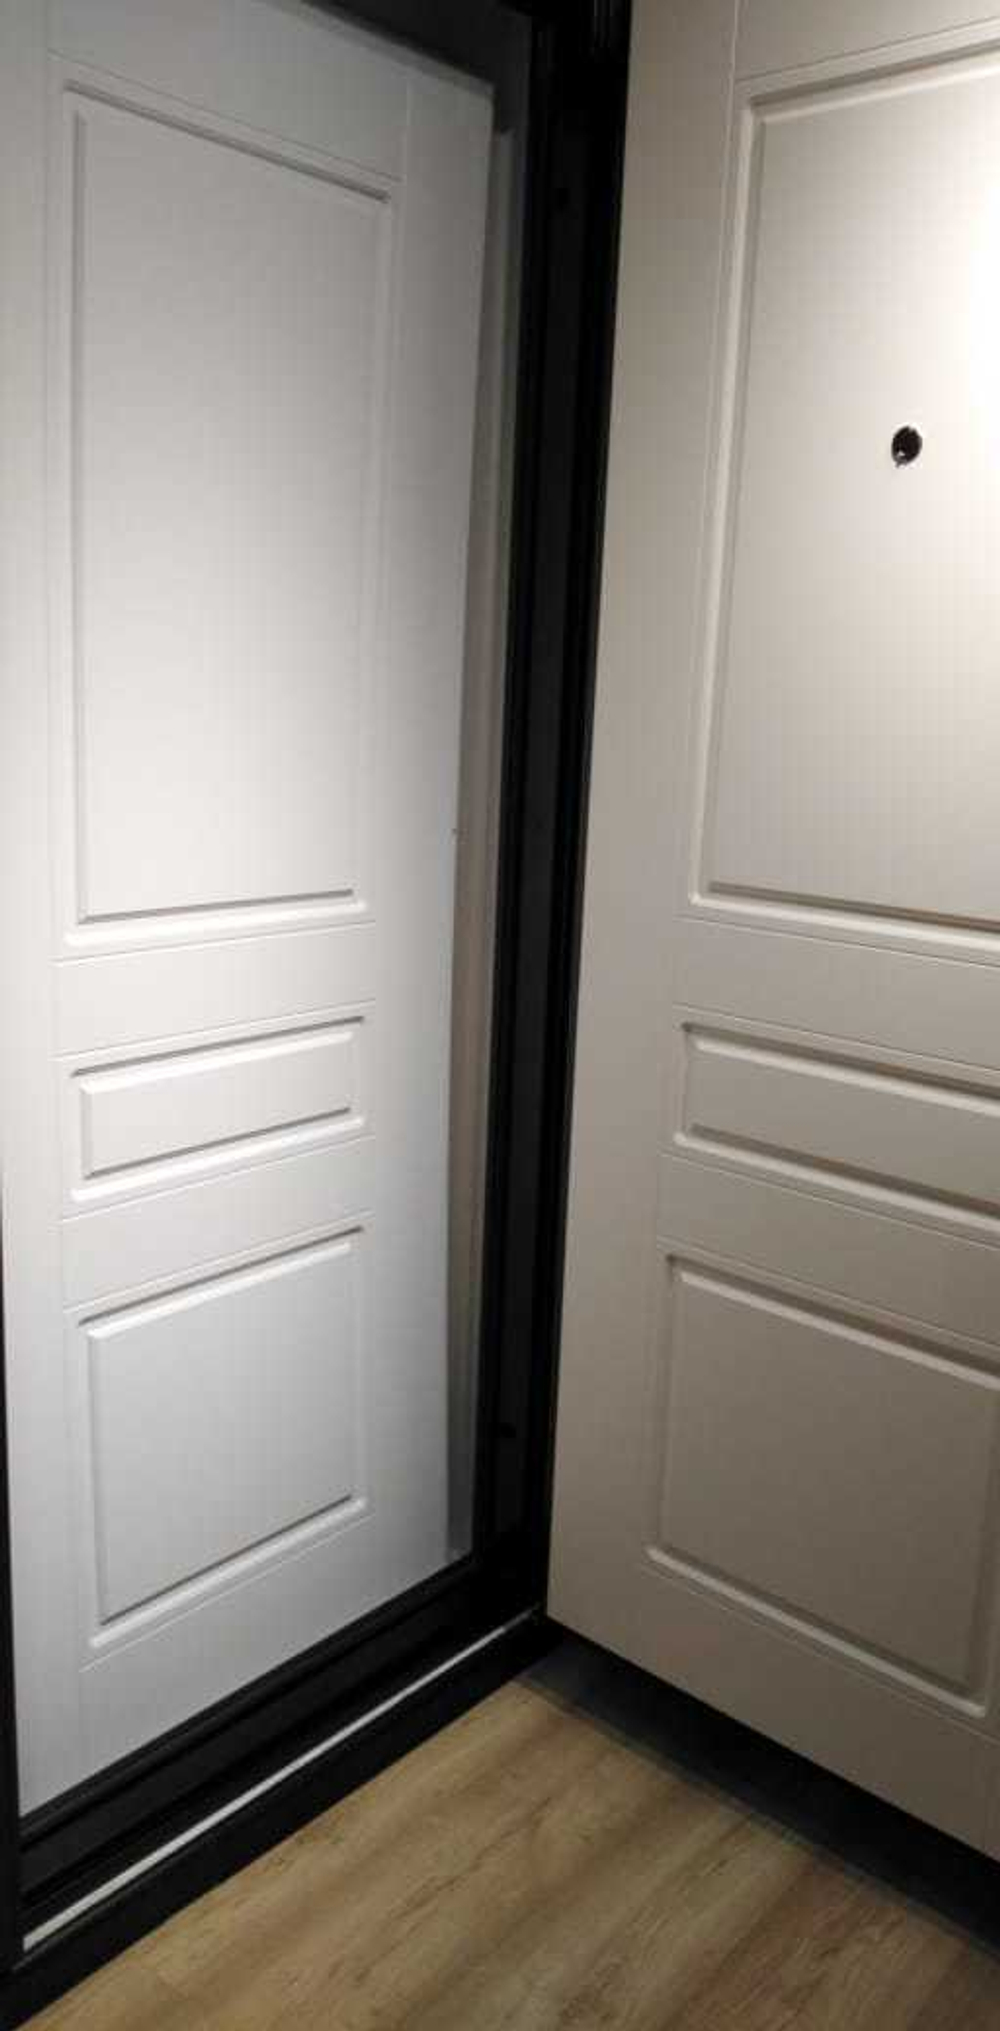 Входная металлическая дверь Бункер HIT Хит B-05/ ФЛ-711 Капучино (белый с кремовым оттенком, без тесктуры)